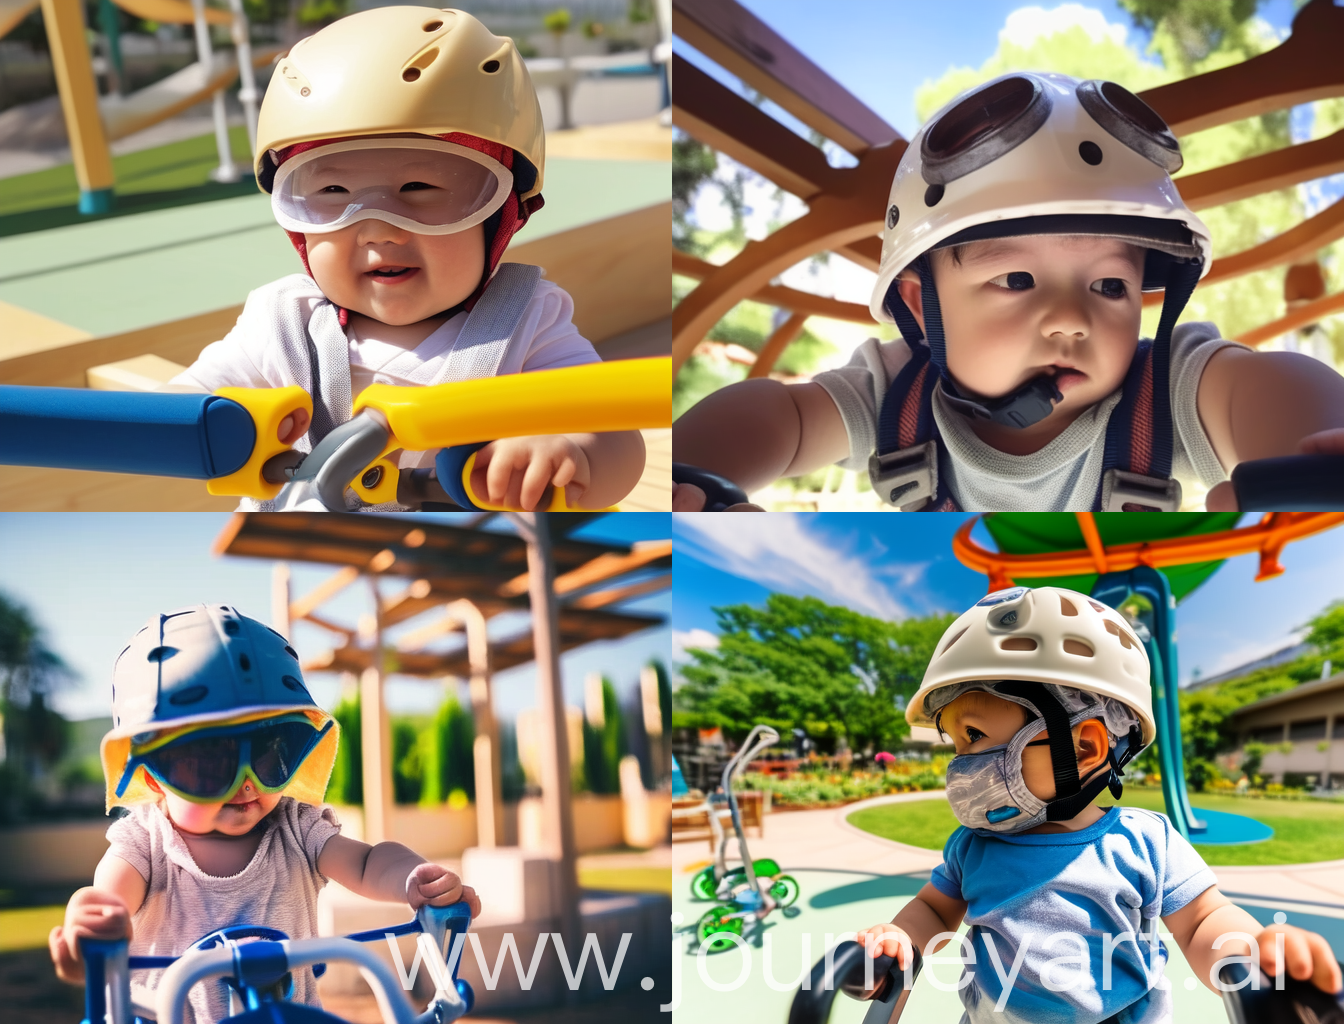 мальчик 10 месяцев в ортопедическом шлеме играет на улице летом на детской площадке